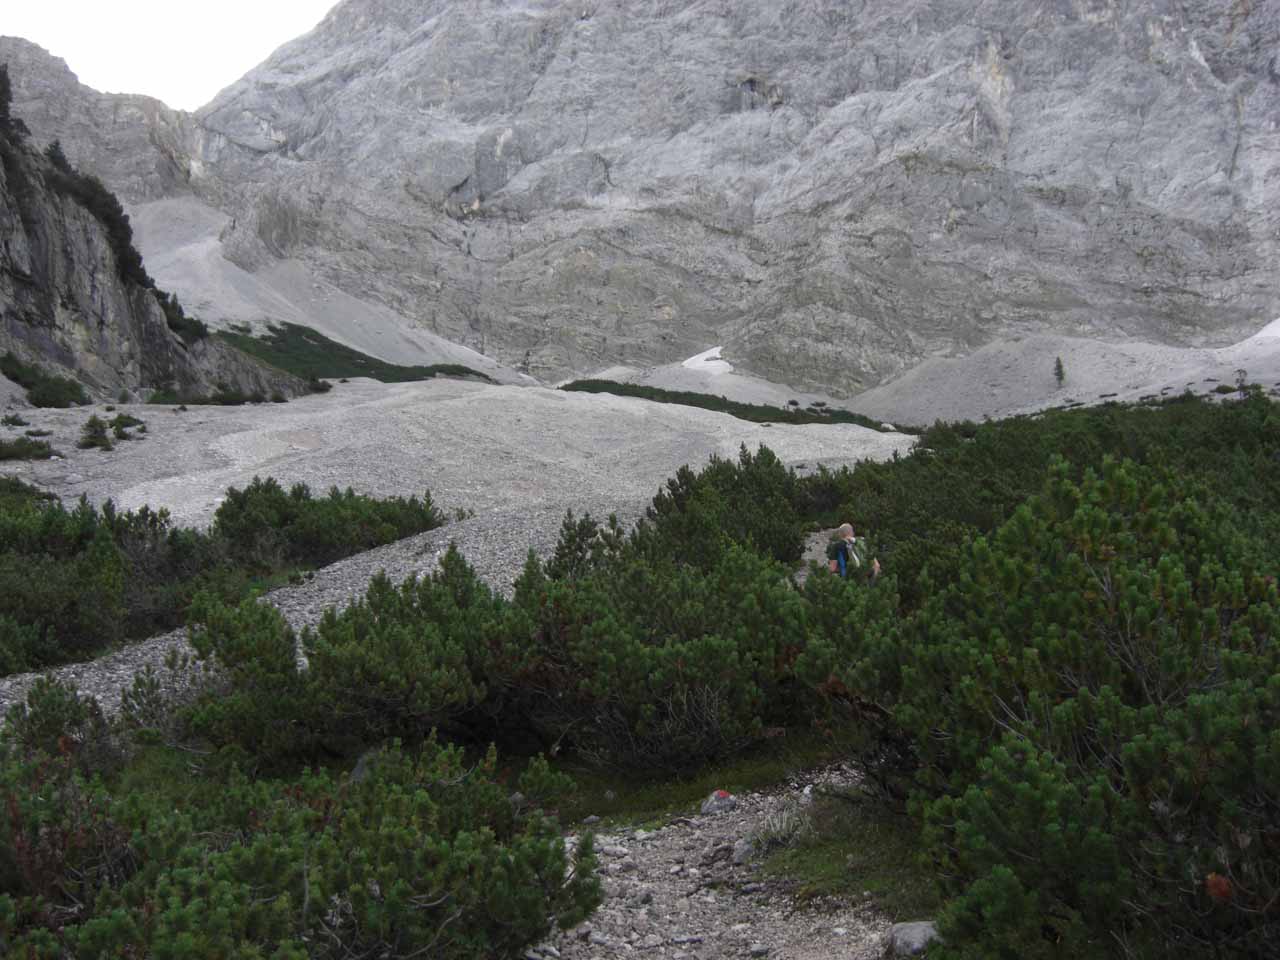 Klettertour Zugspitze